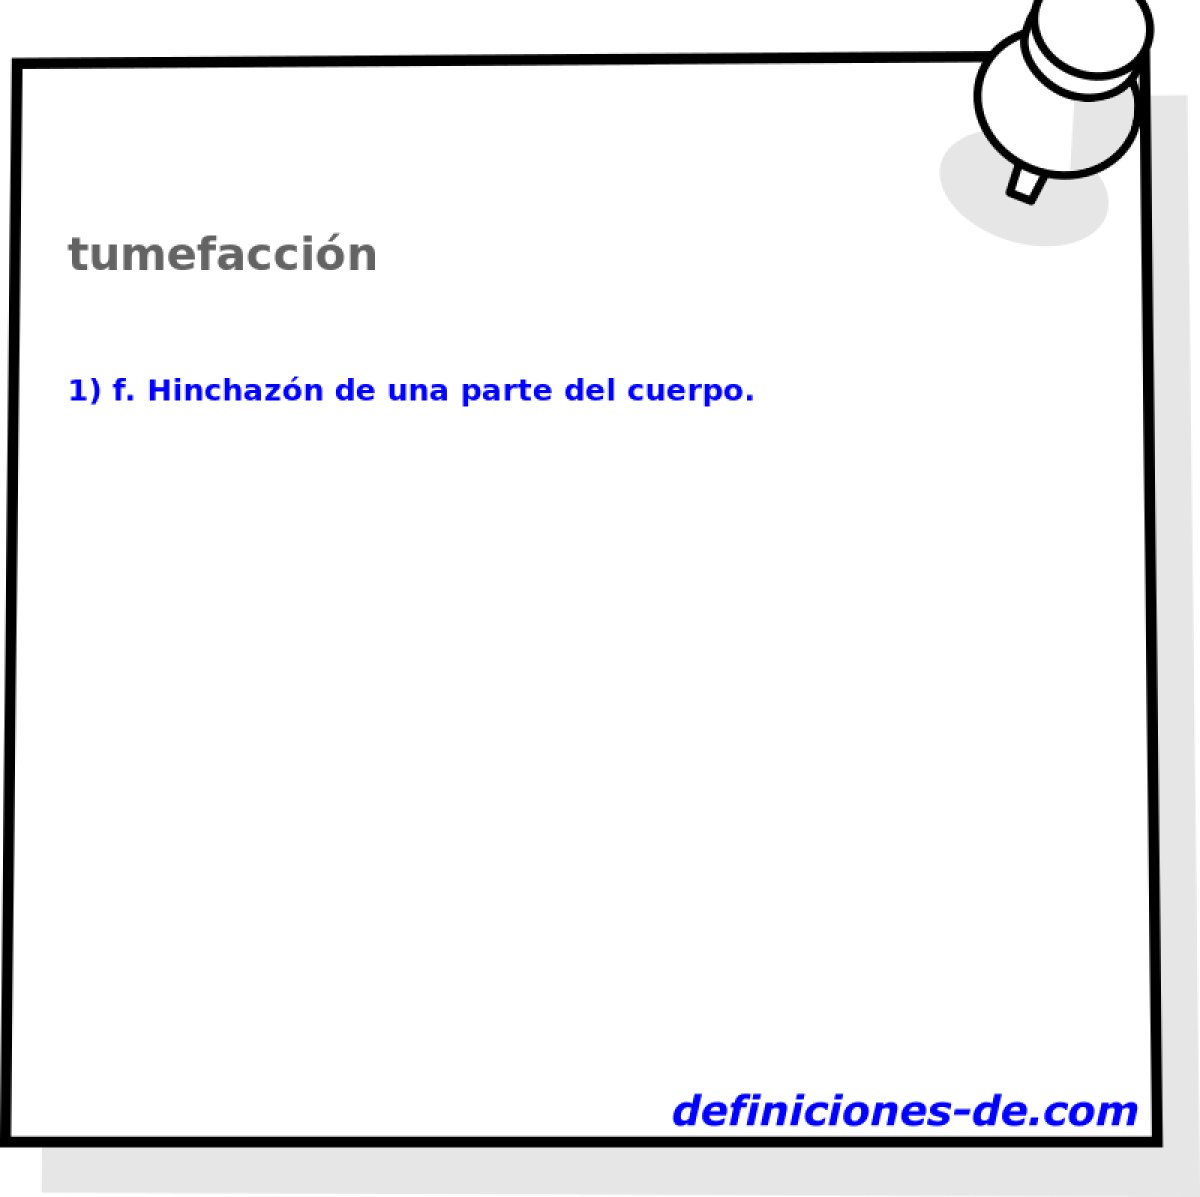 tumefaccin 